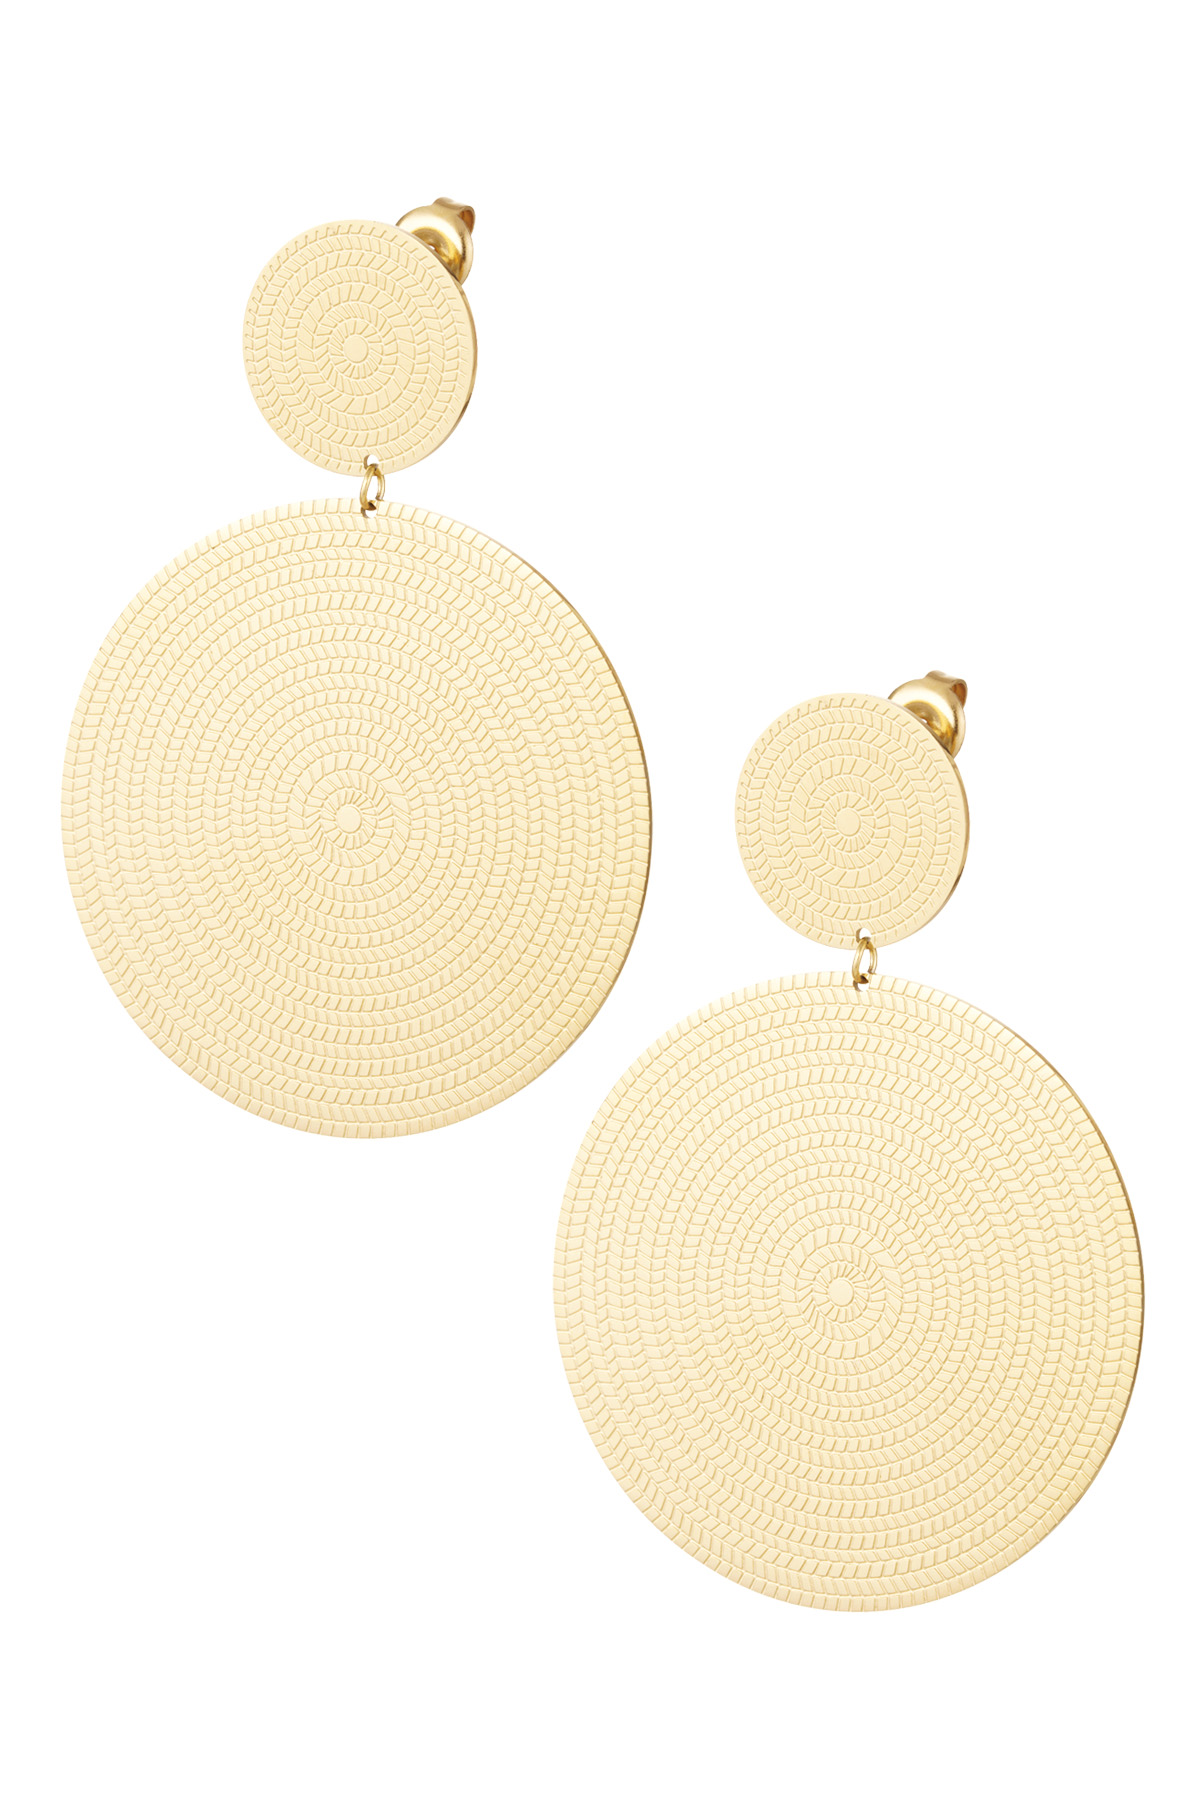 Earrings large hoops - gold h5 